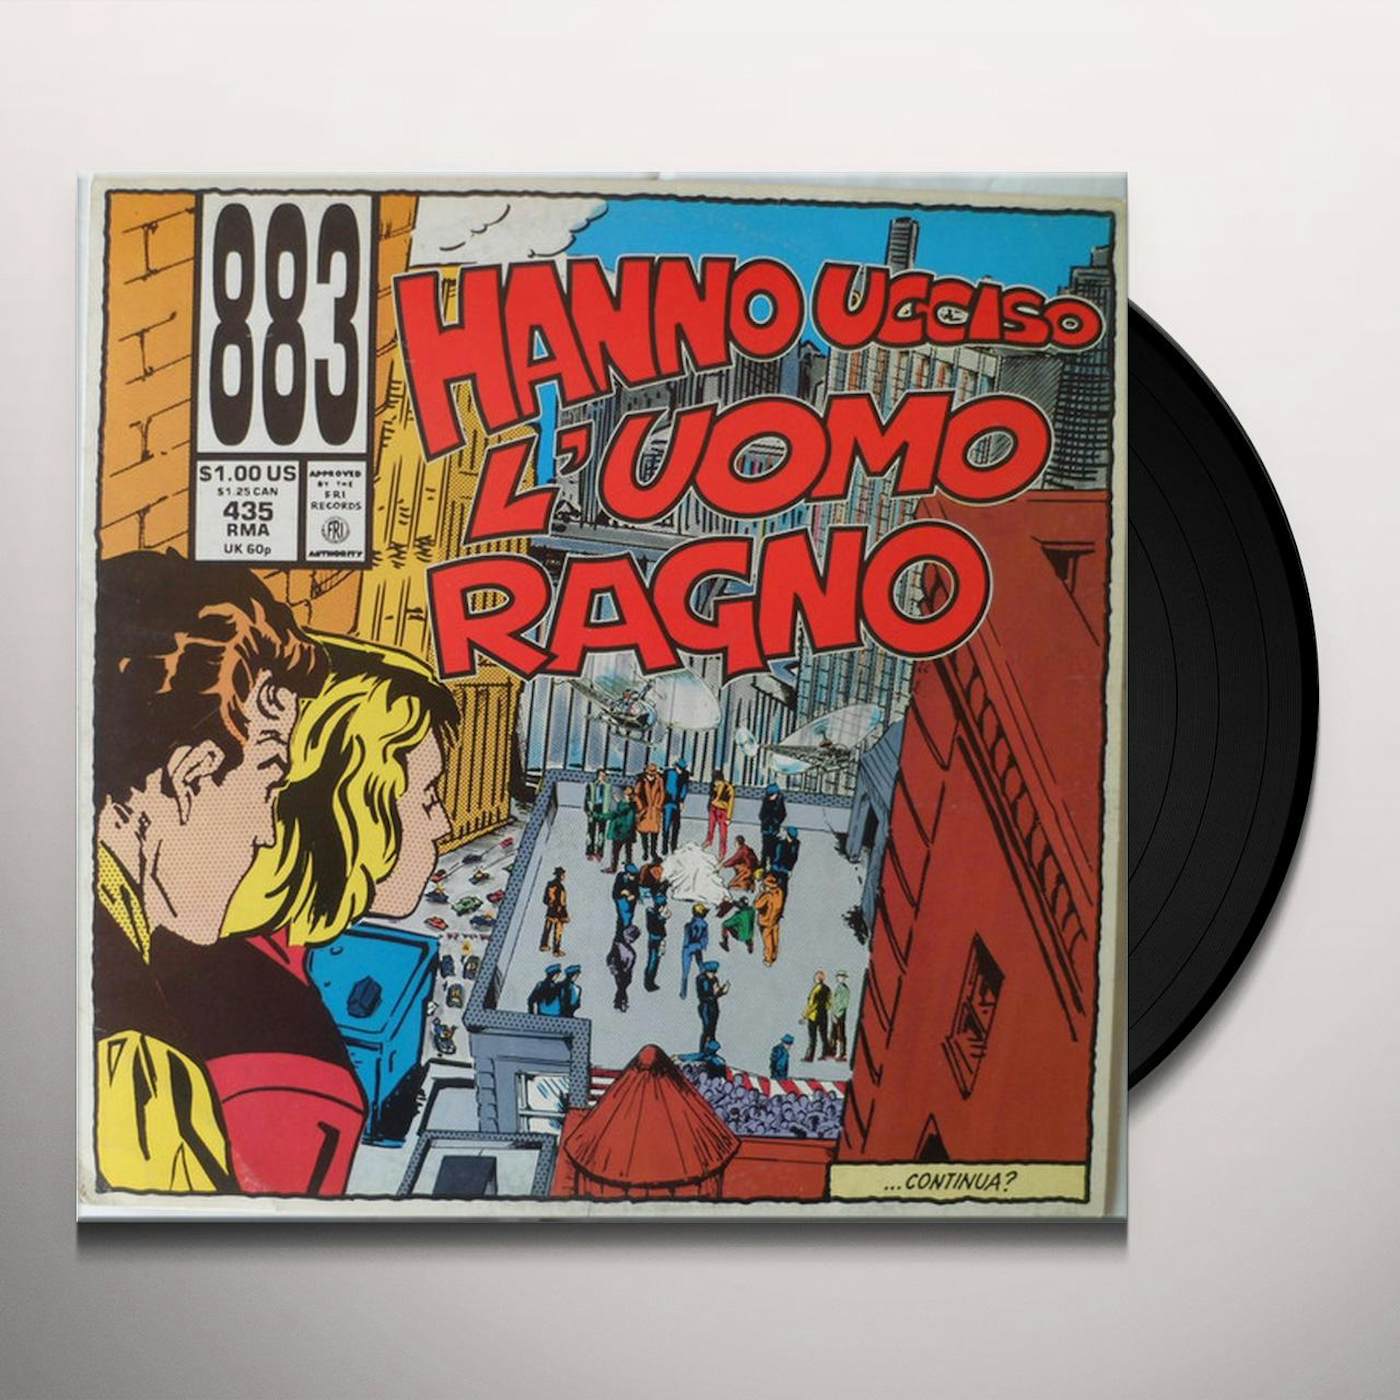 883 HANNO UCCISO L'UOMO RAGNO Vinyl Record - Italy Release